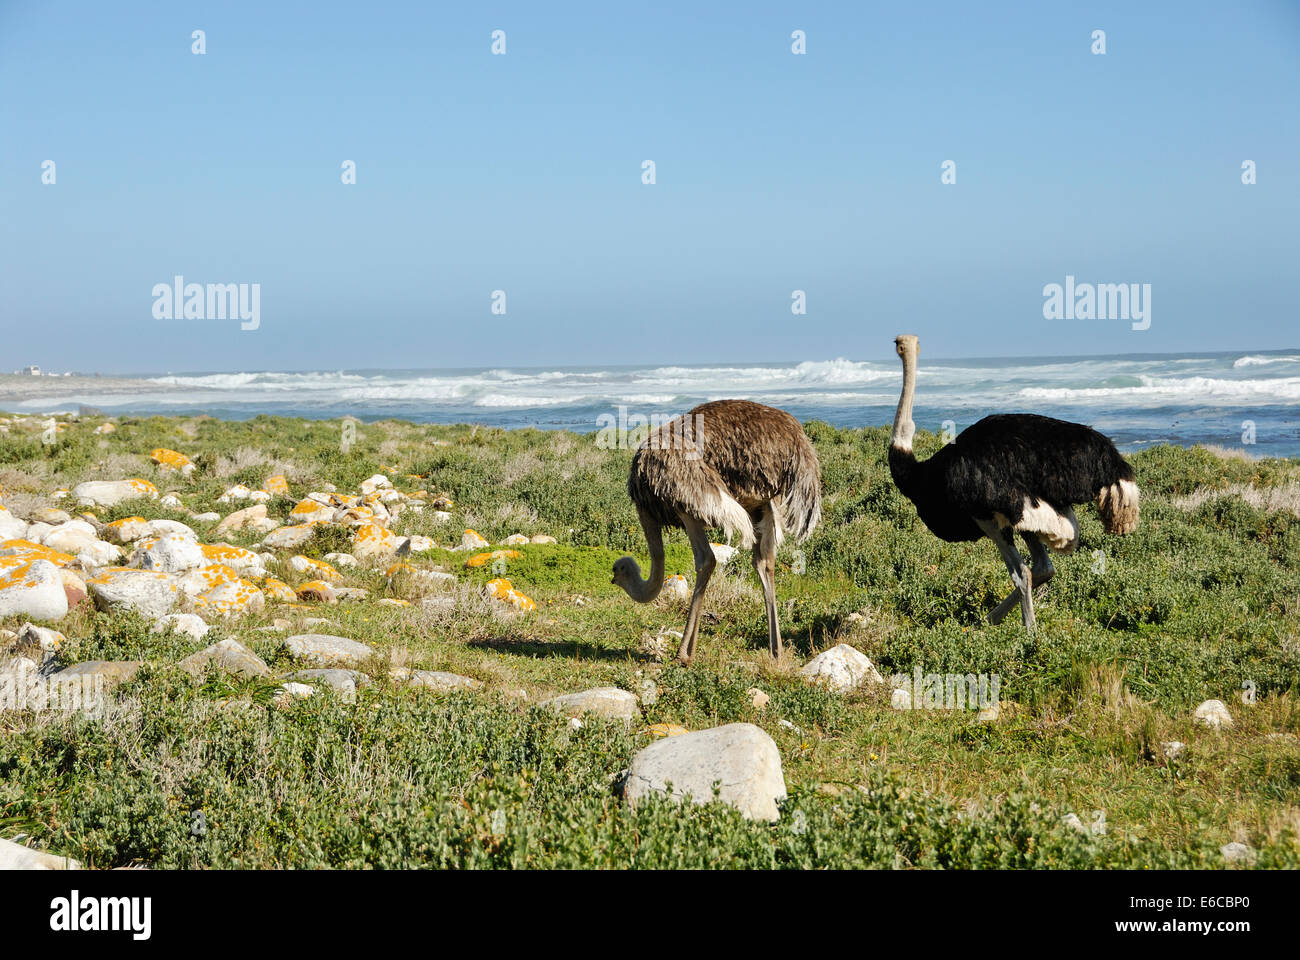 Autruche d'Afrique (Struthio camelus) à côté de la plage, près du Cap de Bonne Espérance, Province de Western Cape, Afrique du Sud Banque D'Images